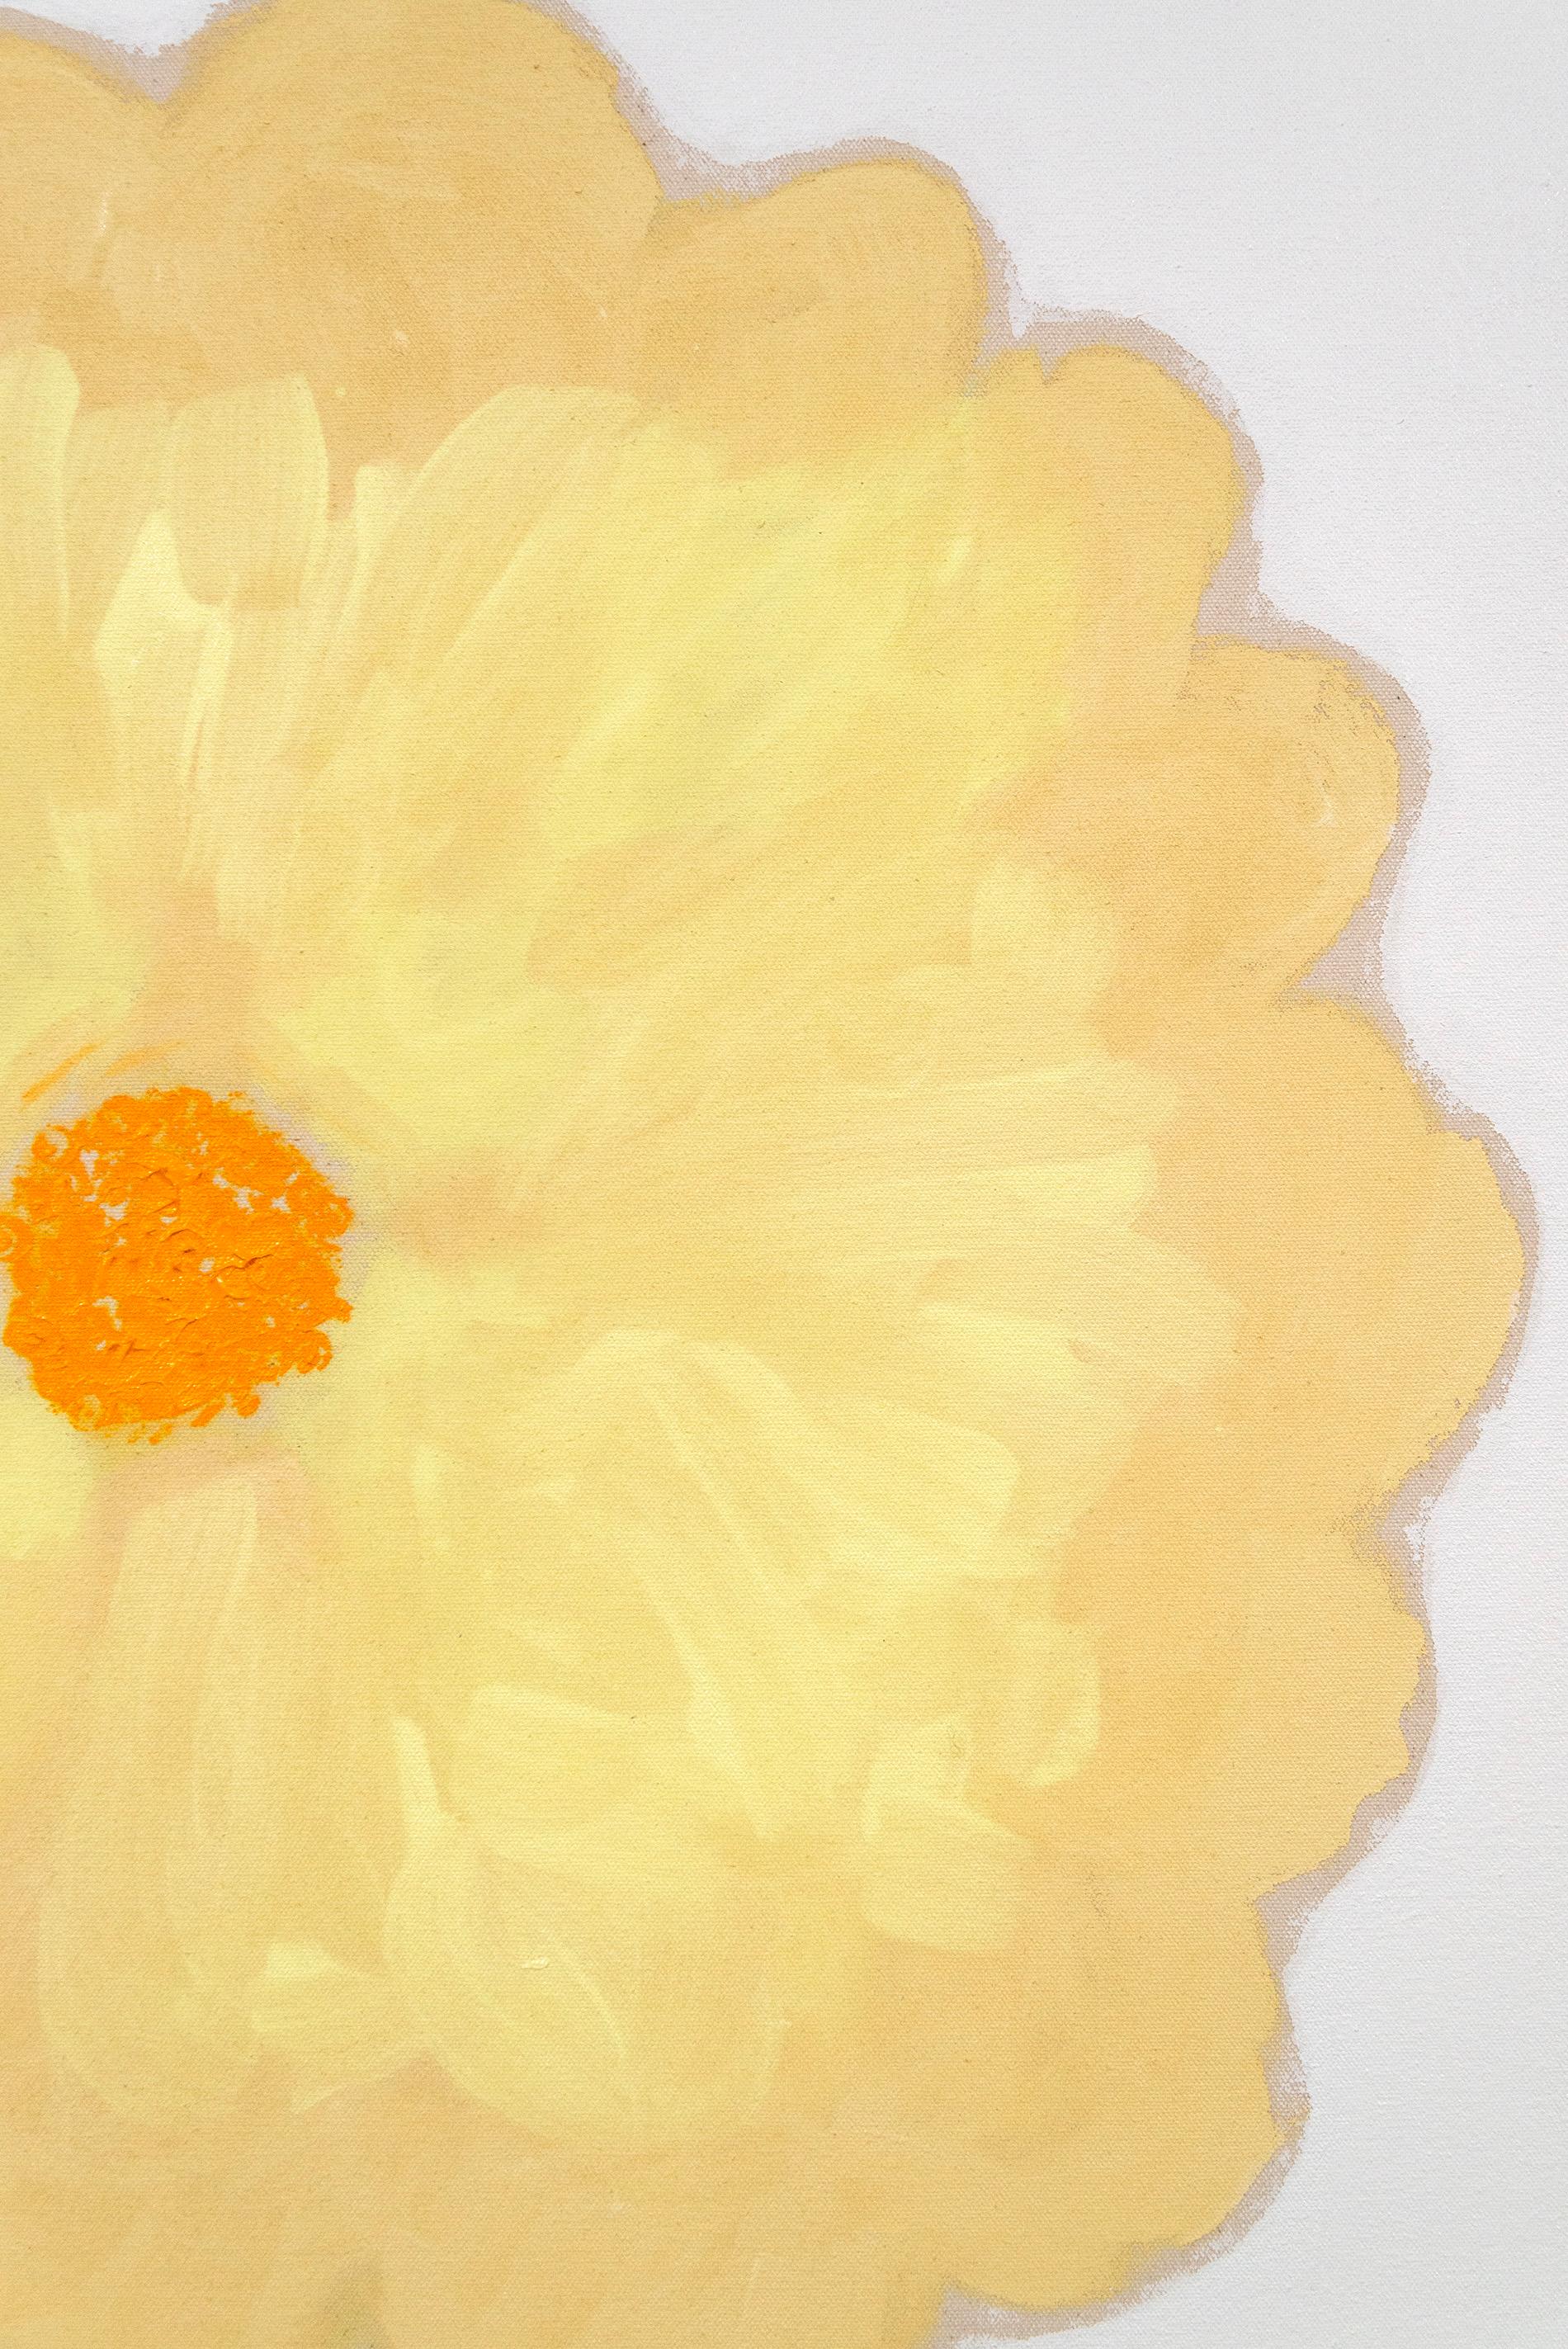 Blossom Pale - coloré, expressif, floral abstrait, acrylique sur toile - Contemporain Painting par Pat Service